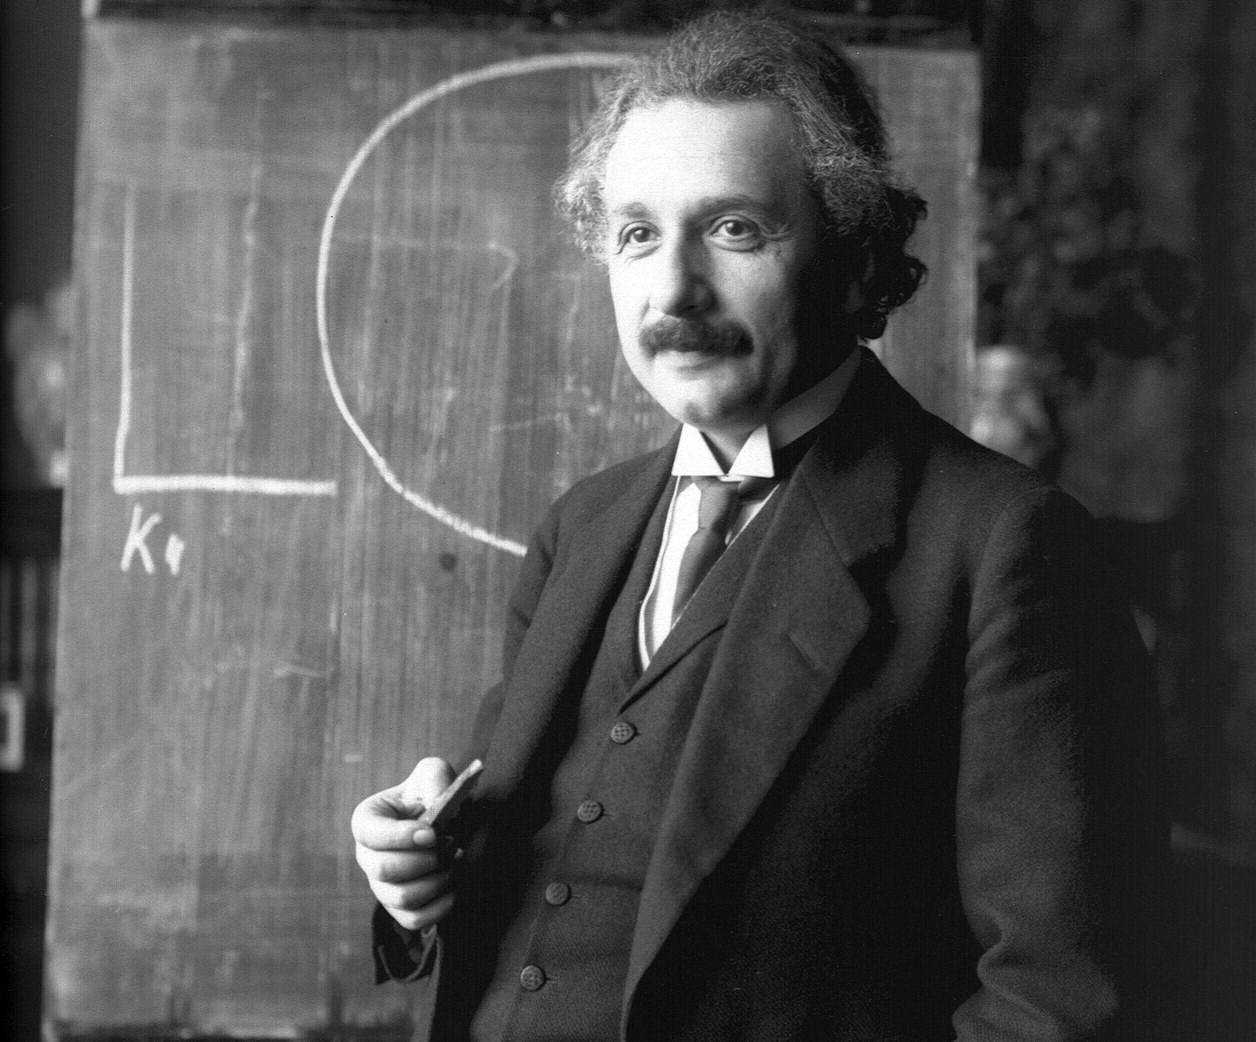 Ο γρίφος του Αϊνστάιν που “μόνο το 2% του πληθυσμού μπορεί να λύσει”. Αλήθεια ή αστικός μύθος. Δείτε το γρίφο και δοκιμάστε να τον λύσετε